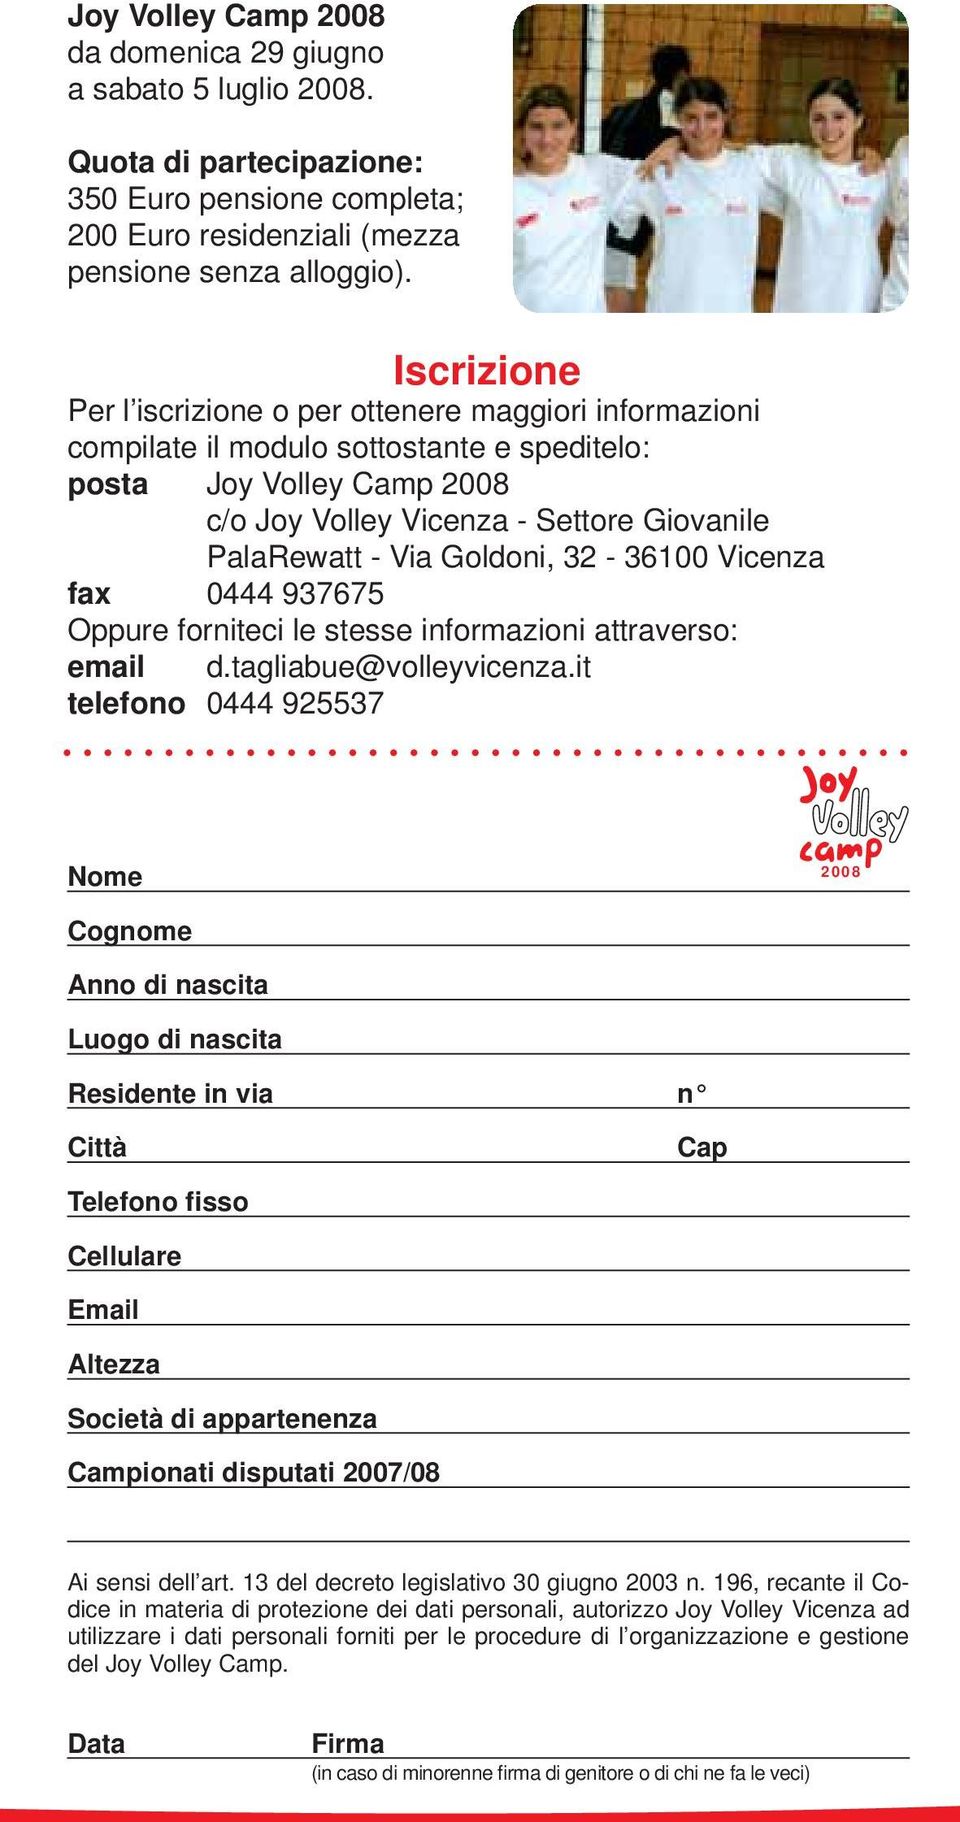 Goldoni, 32-36100 Vicenza fax 0444 937675 Oppure forniteci le stesse informazioni attraverso: email d.tagliabue@volleyvicenza.